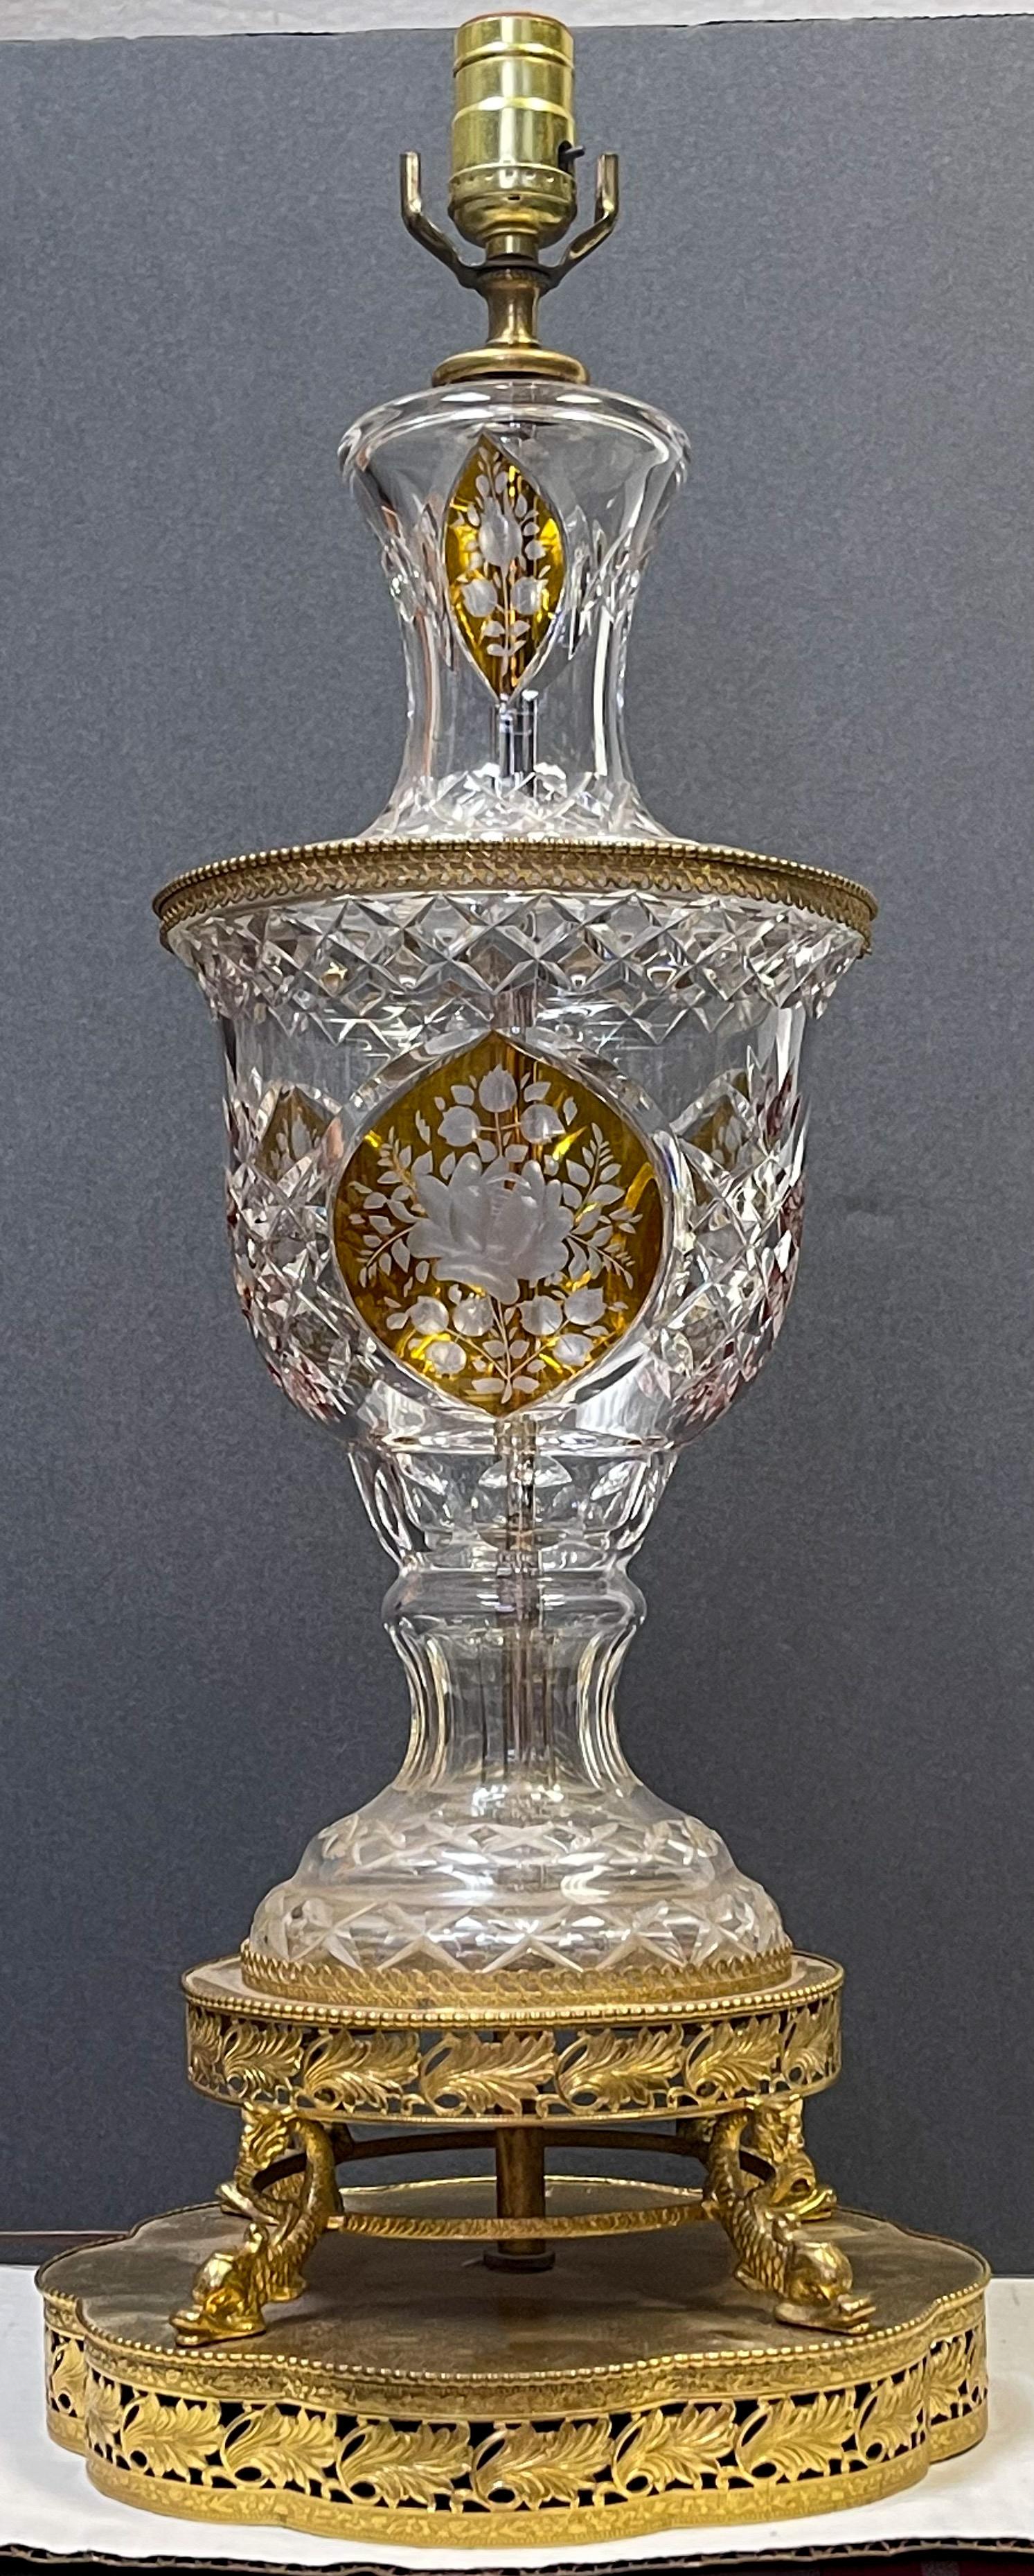 Il s'agit d'une belle lampe de table italienne en laiton et verre taillé de style néo-classique. Notez l'insert floral ambré ! La lampe repose sur quatre pieds dauphins et une base ronde. Il s'agit d'une pièce du milieu du siècle et elle n'est pas